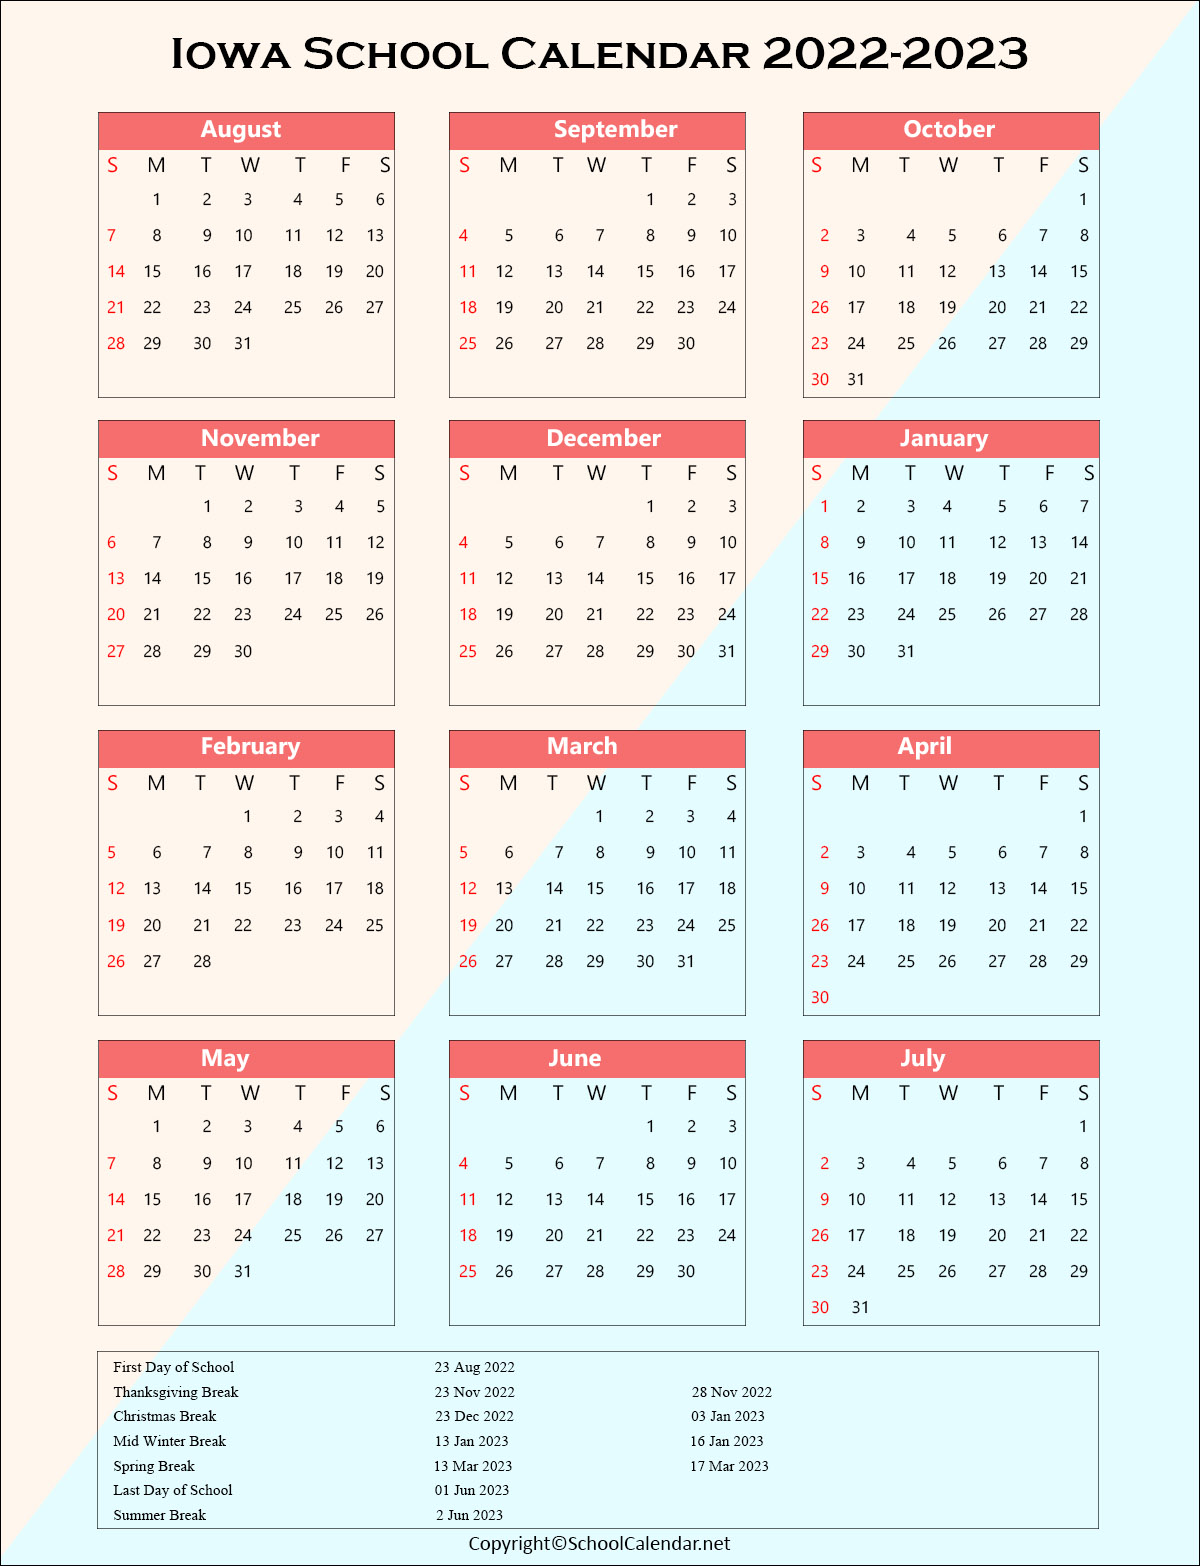 Iowa School Holiday Calendar 2022